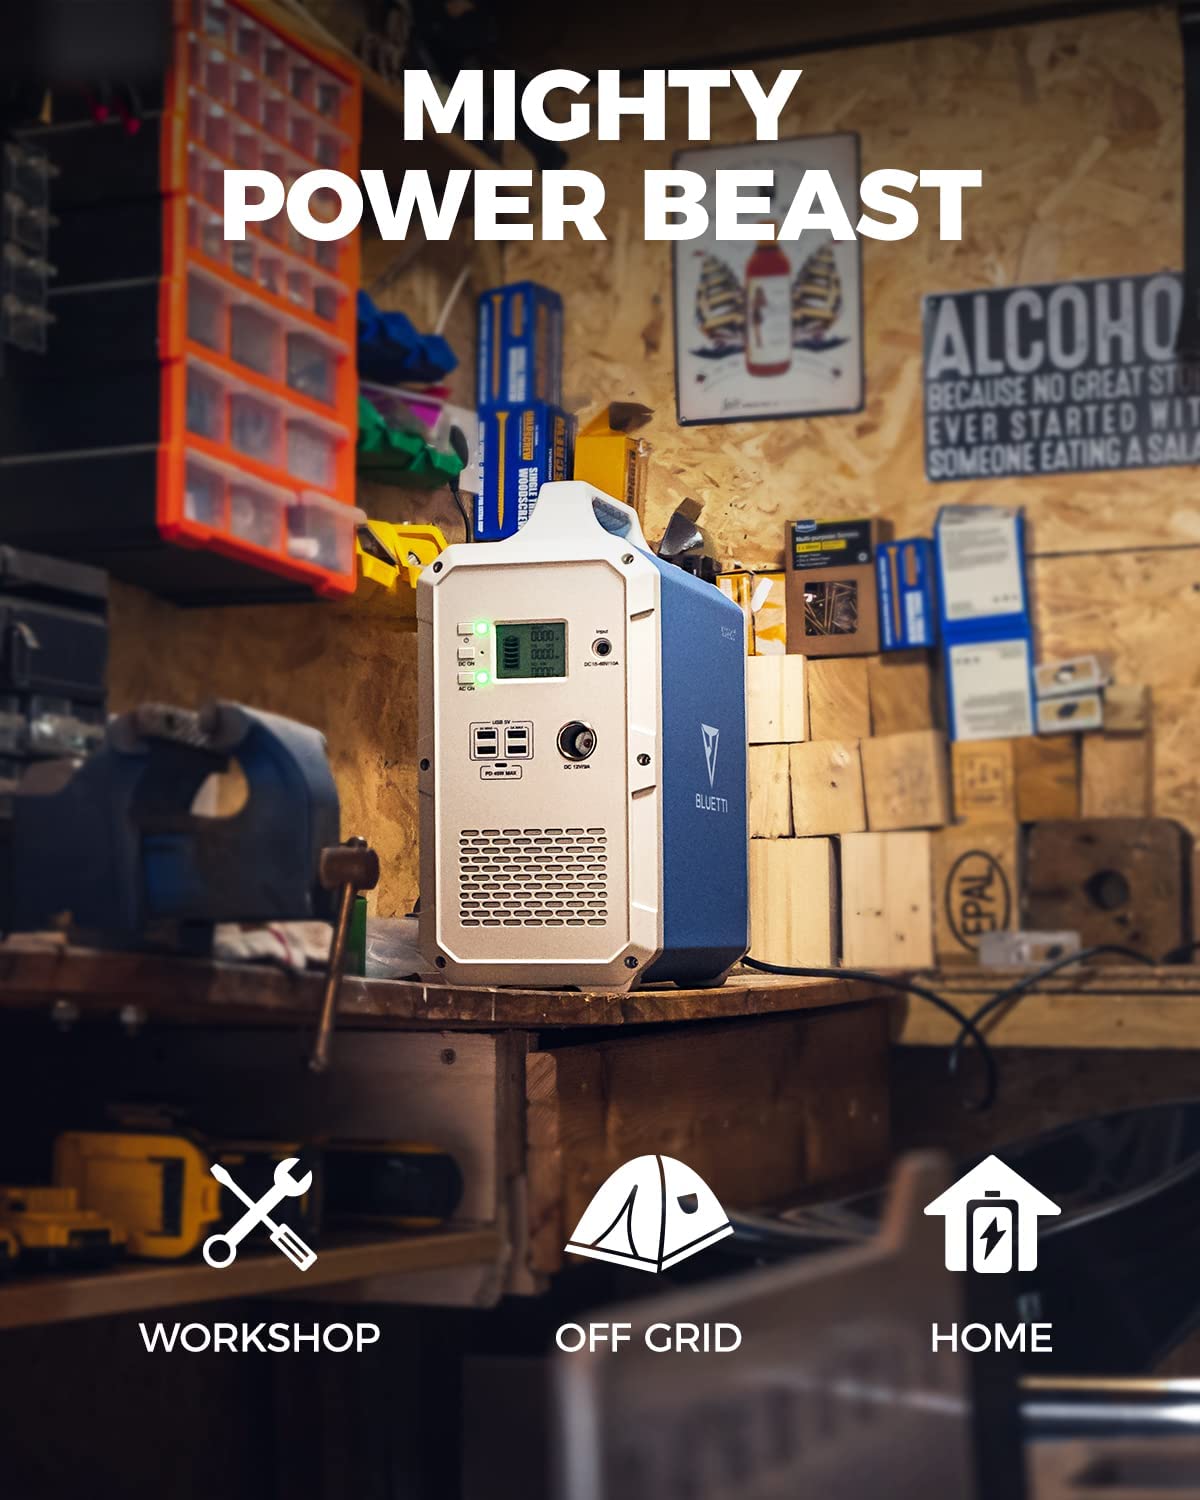 El Bluetti EB240 es un monstruo de energia para el taller, hogar y camping.